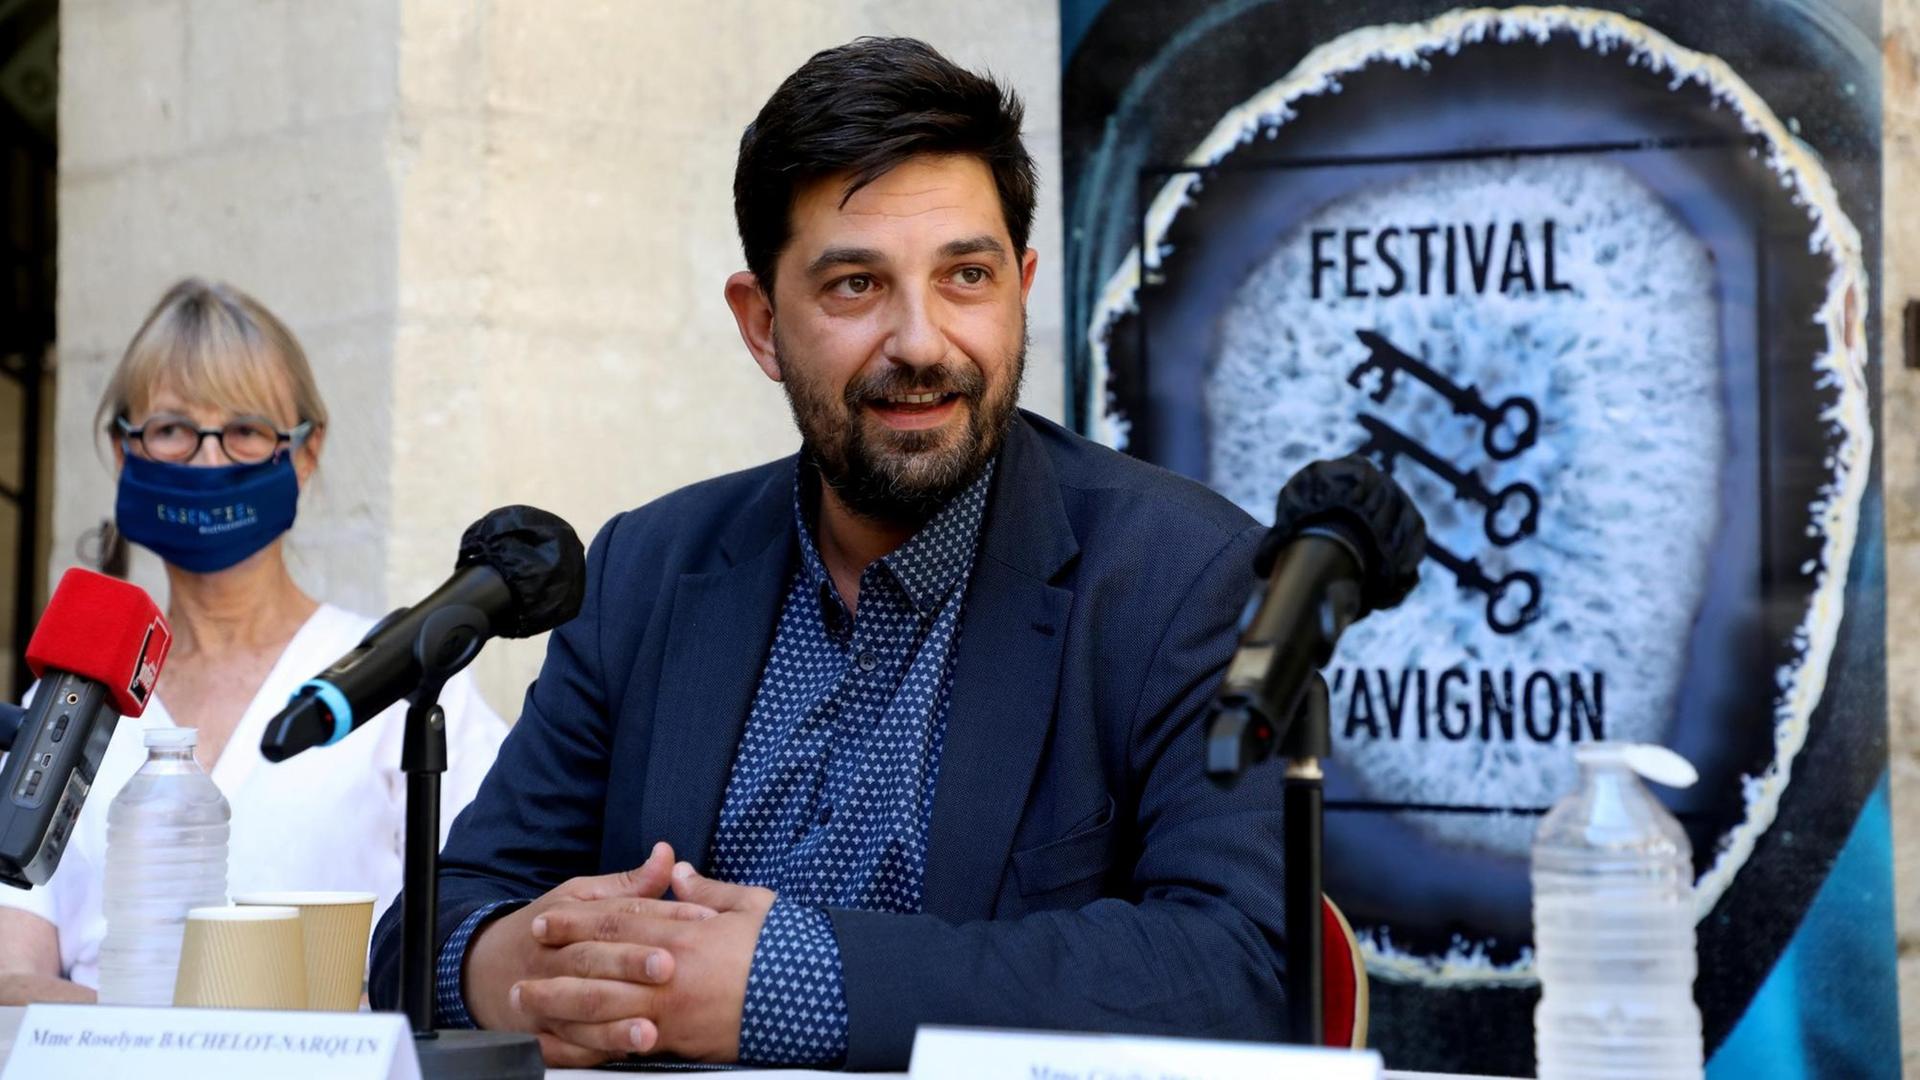 Festivalleiter Tiago Rodrigues sitzt im Sommeranzug vor Mikrofonen, hinter sich ein Schild des Theaterfestivals Avignon mit drei Schlüsseln.